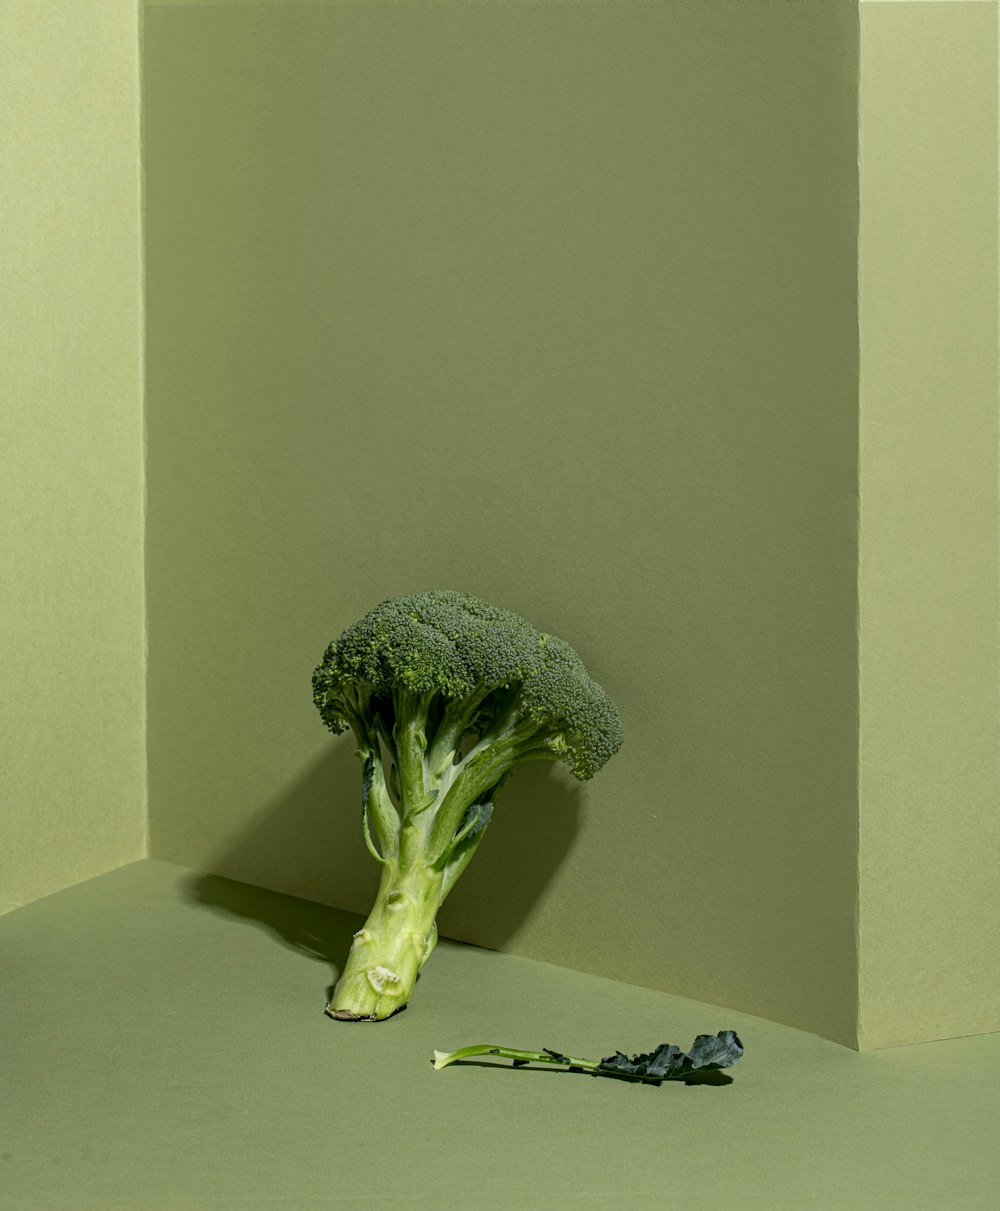 a broccoli head on a table